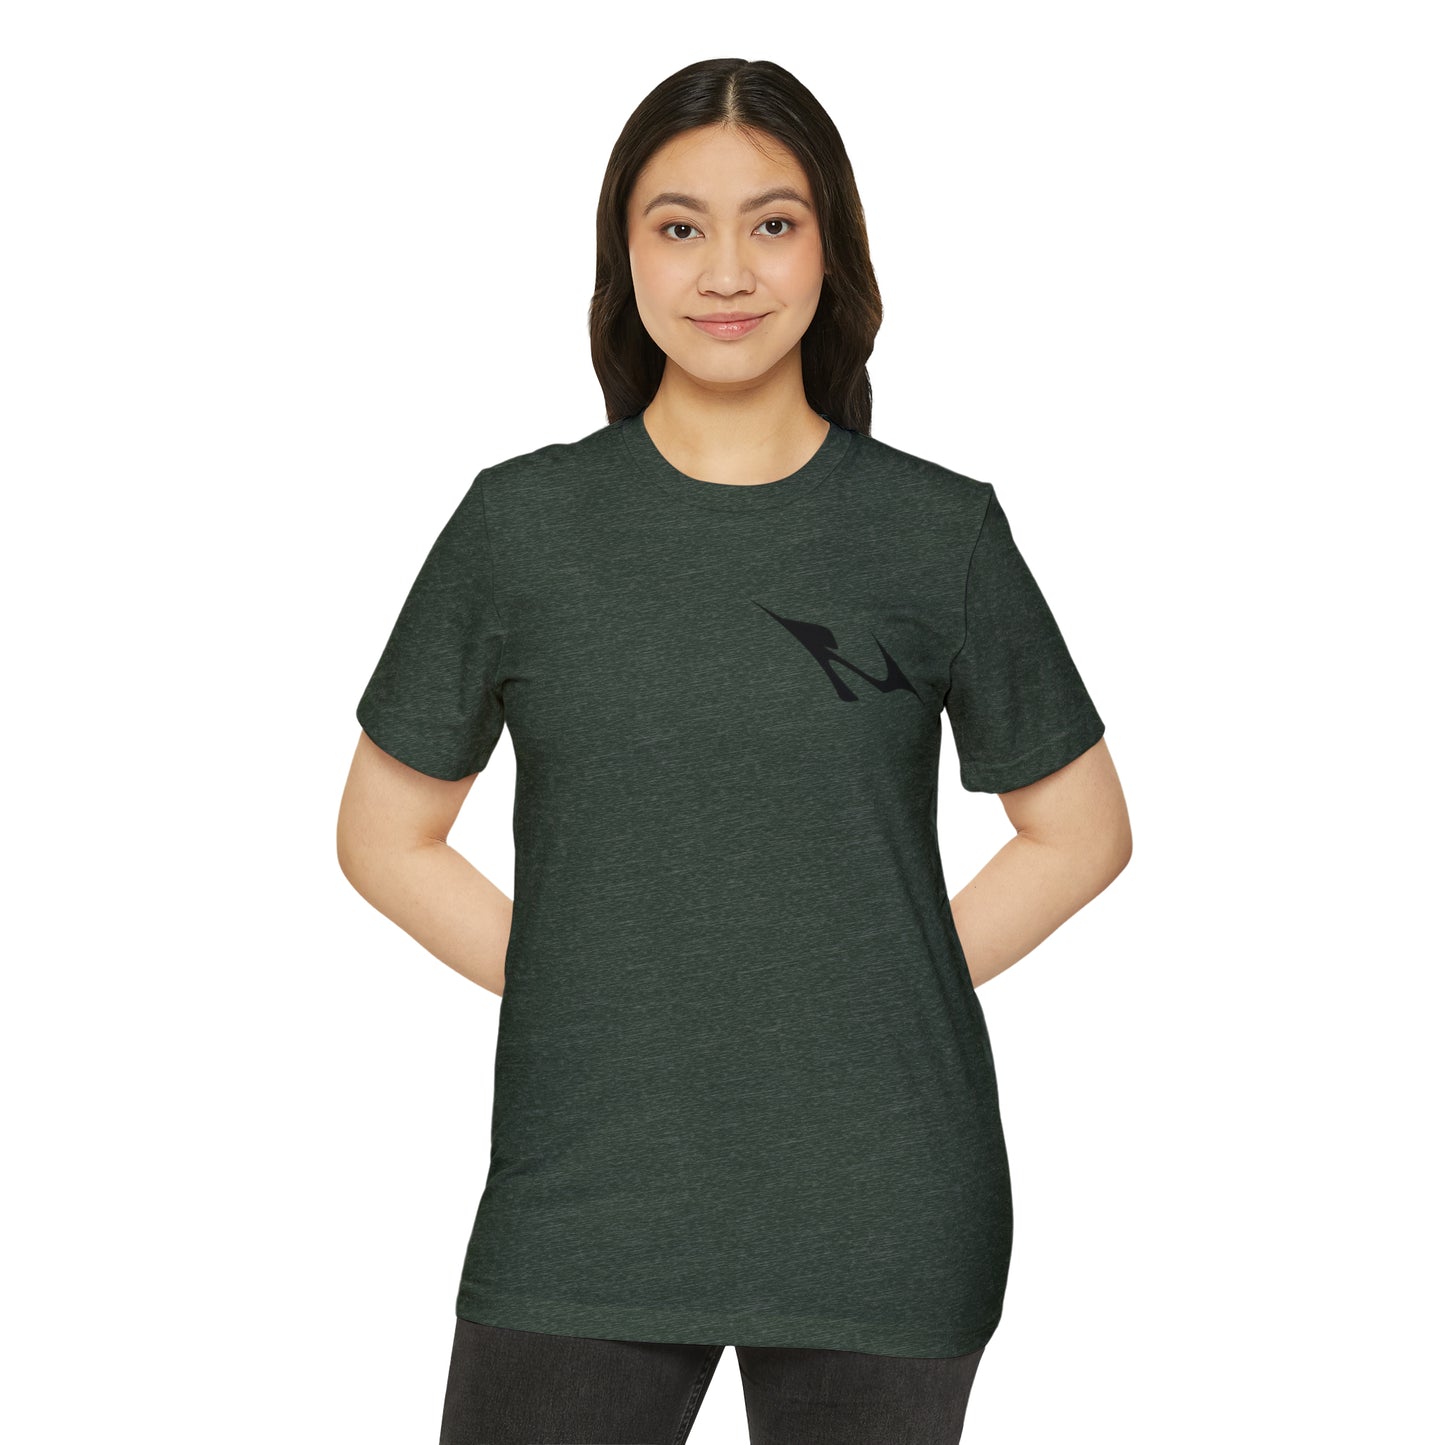 MINIMAL SHAPE 103 - Camiseta ecológica reciclada unisex